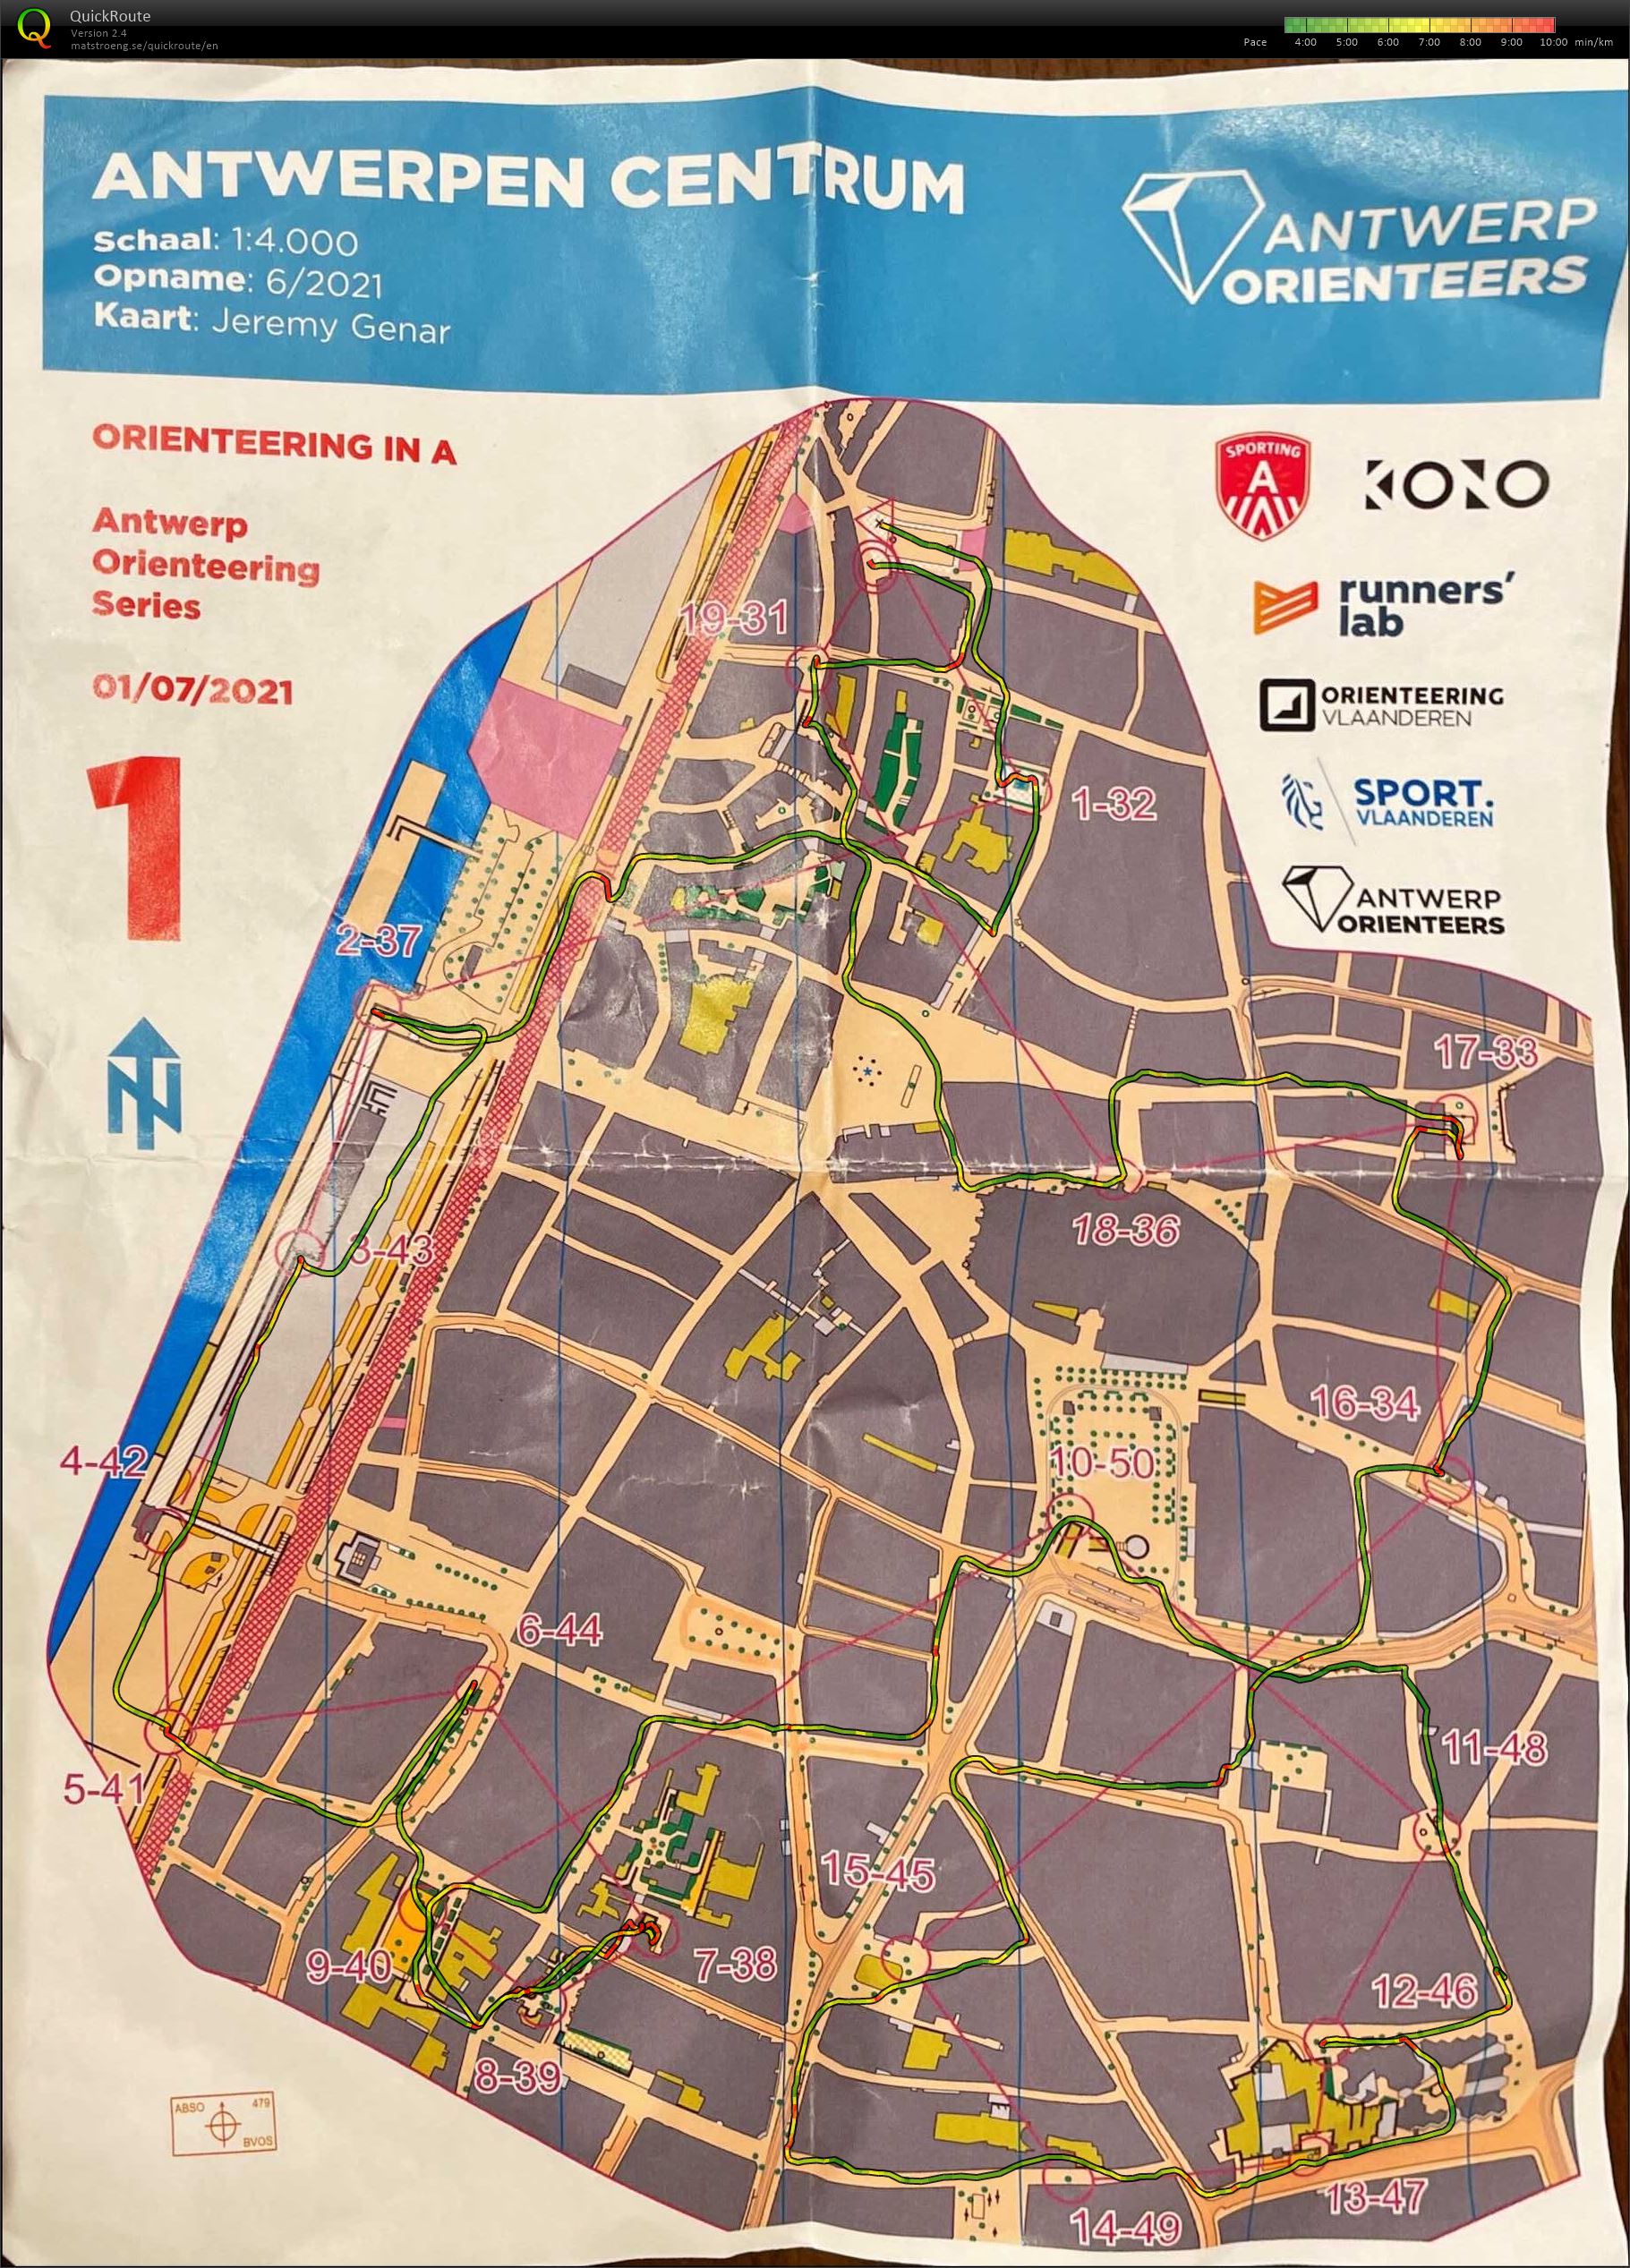 Antwerp Orienteering Series - Antwerpen Centrum - 5K (01.07.2021)